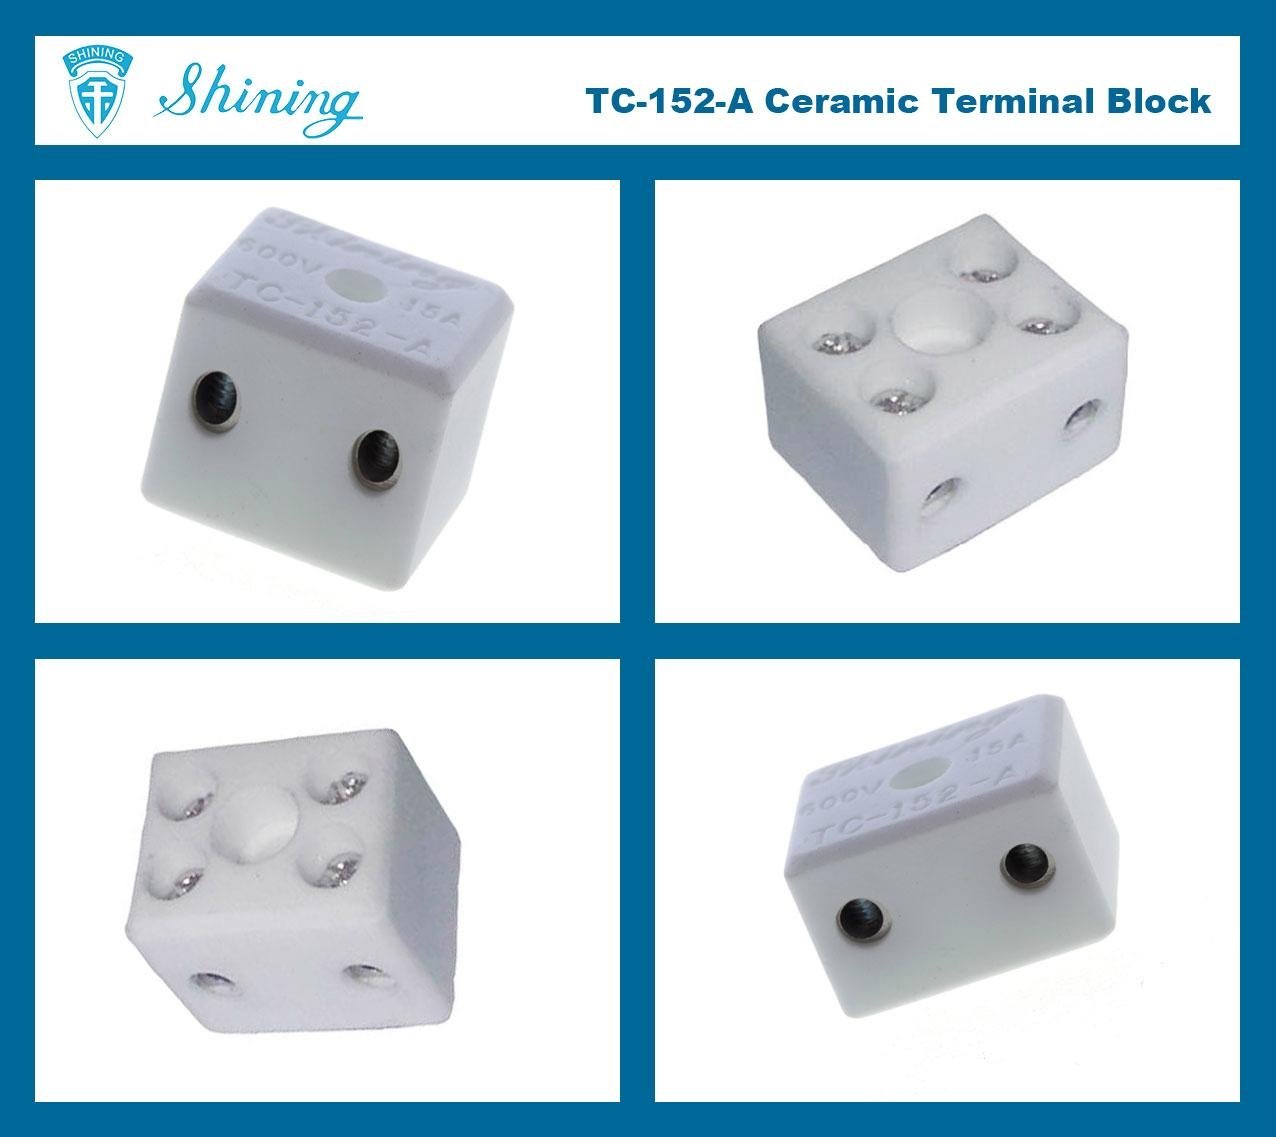 TC-152-A Ceramic Terminal Block